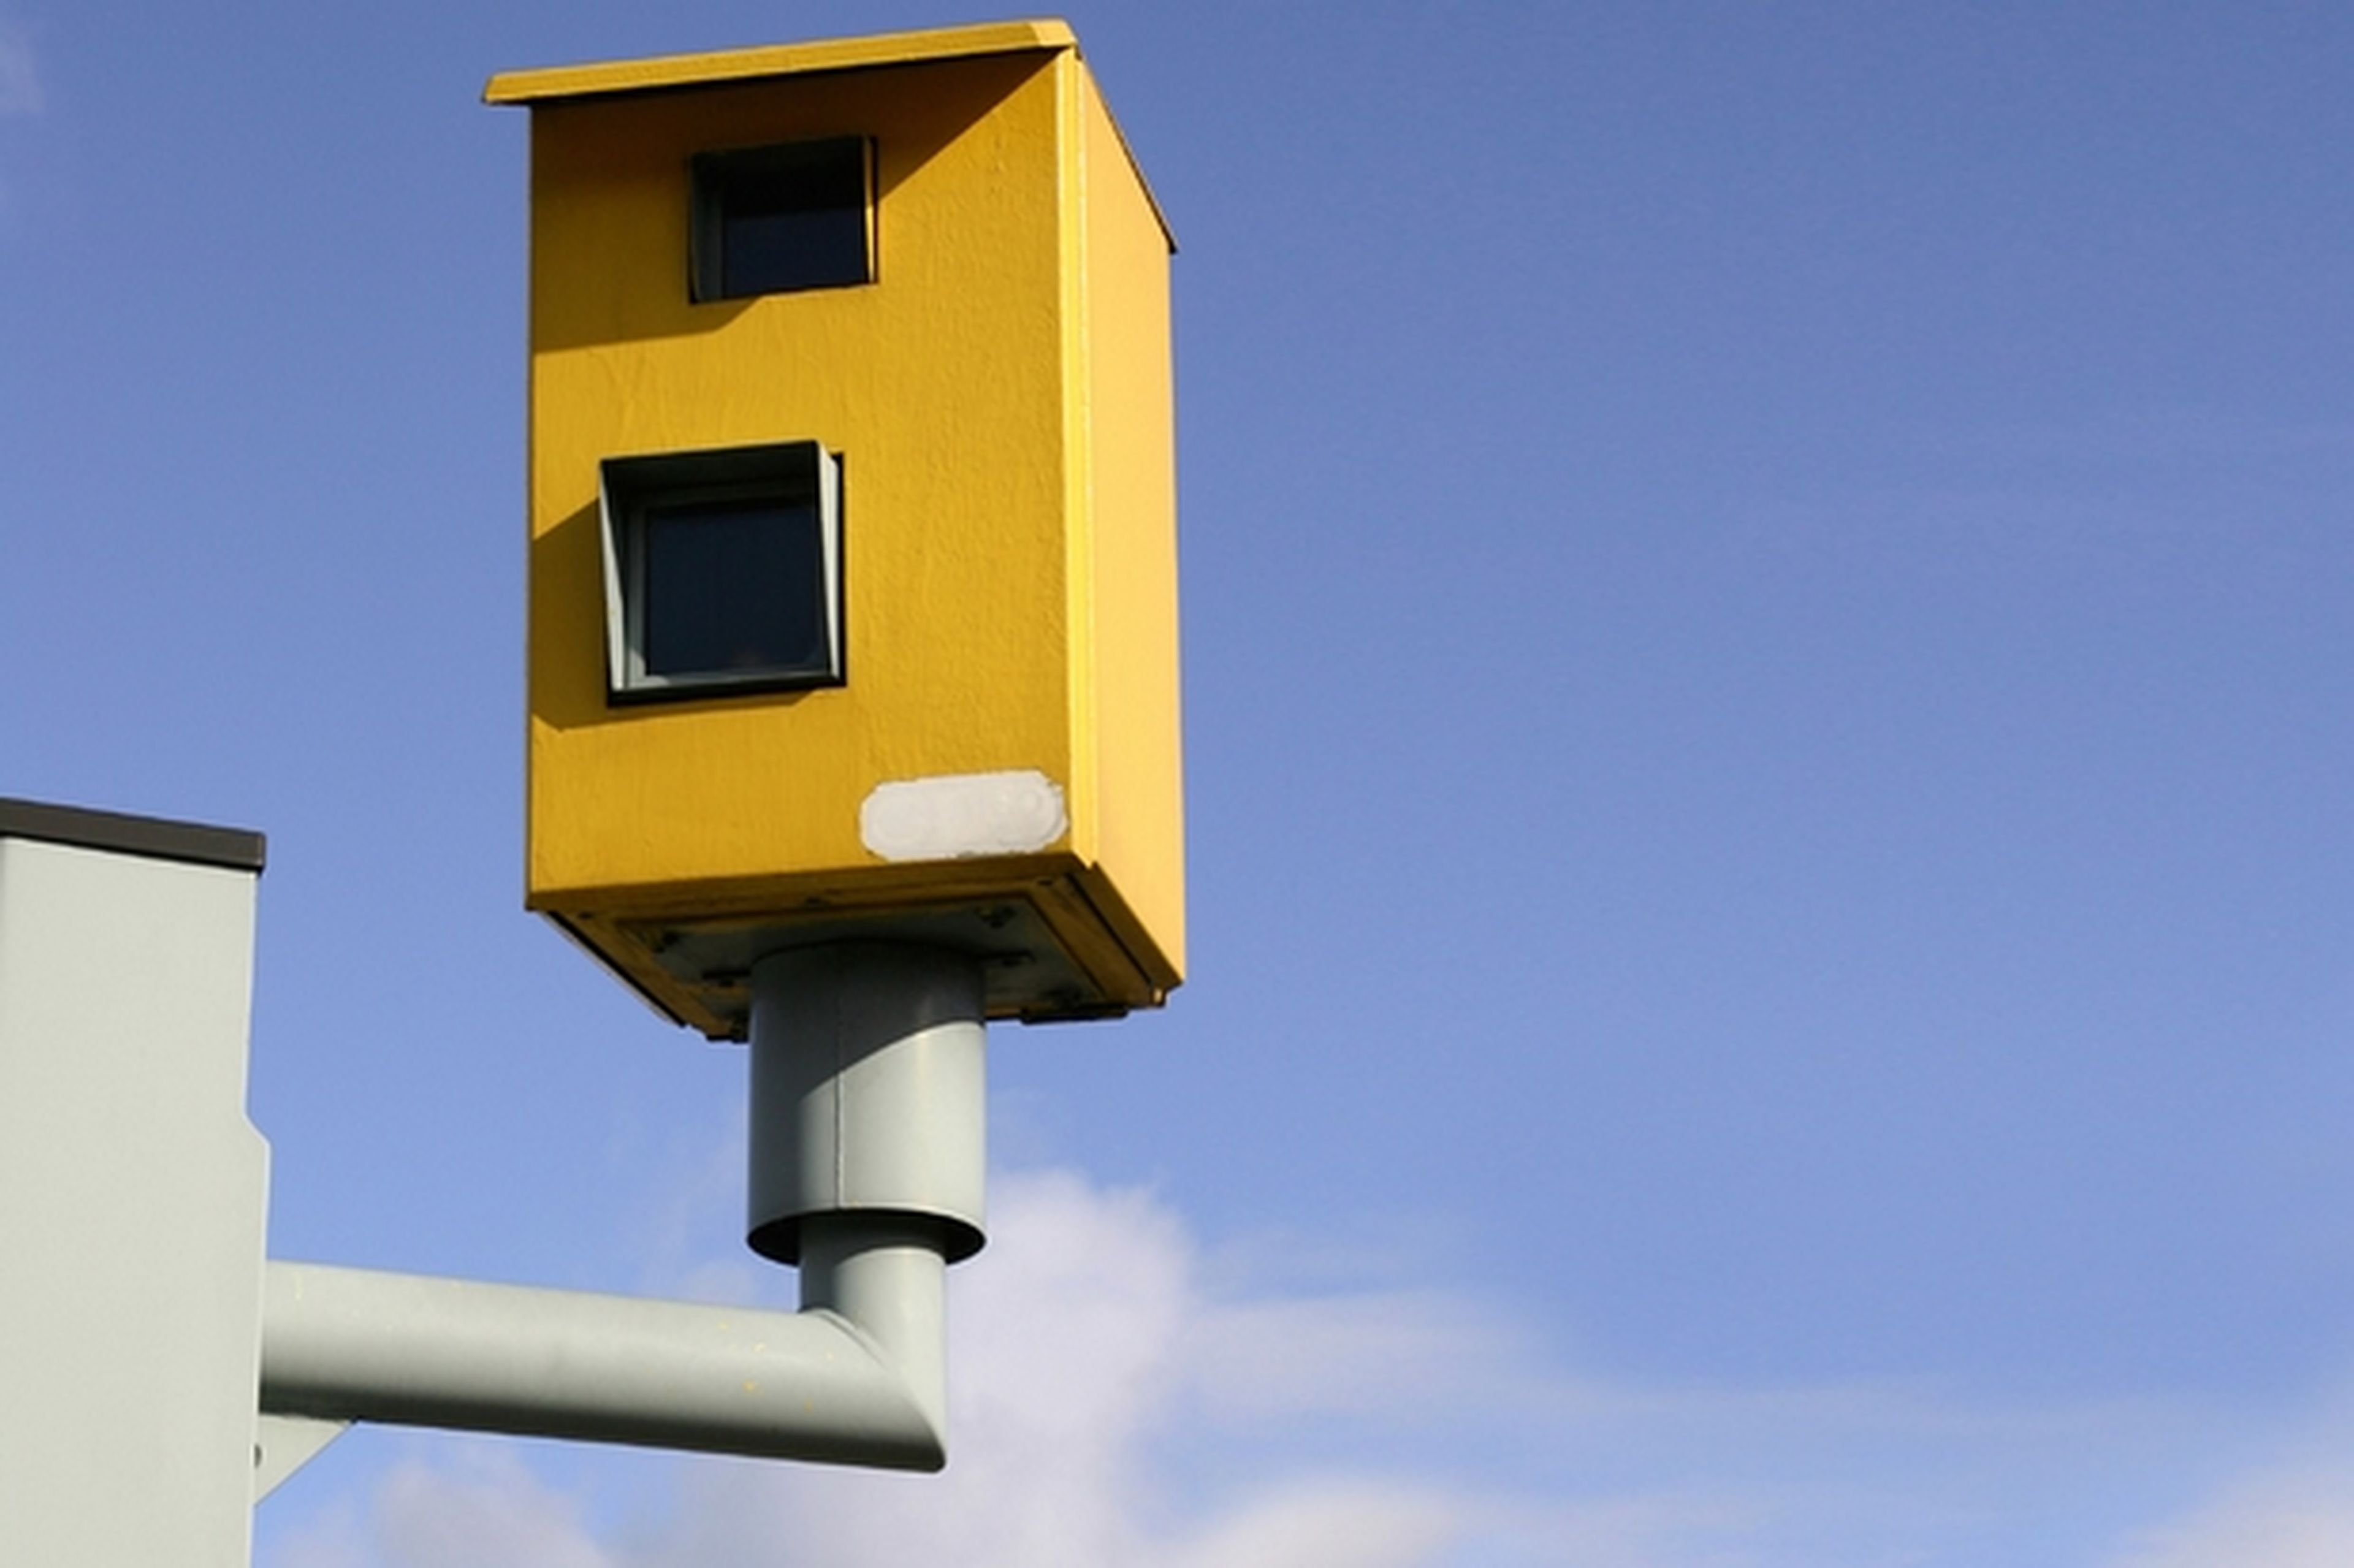 Aumentan las multas de tráfico con radares con cámaras digitales